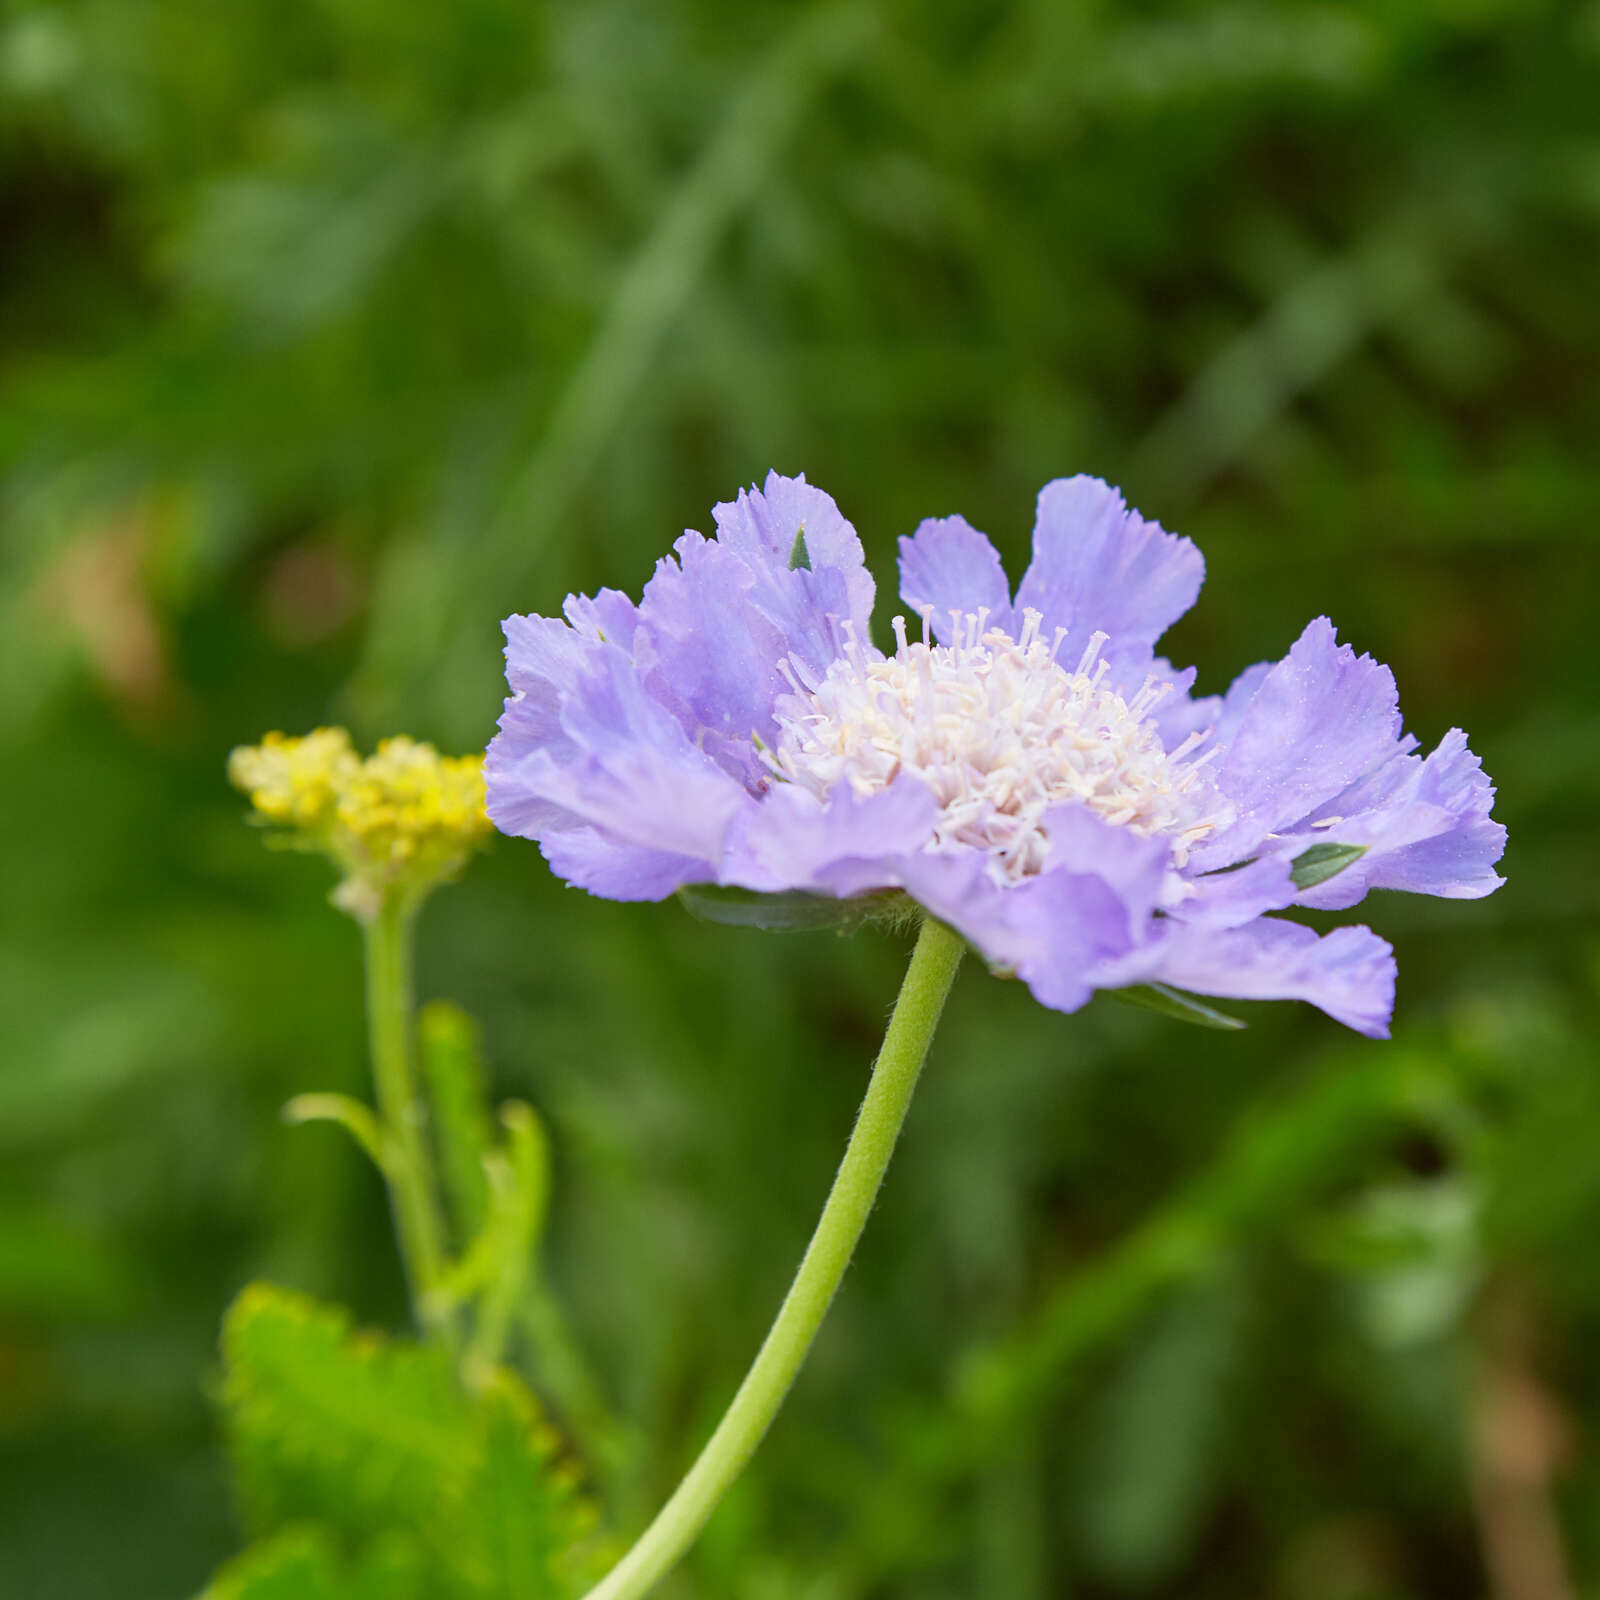 Image of Pincushion-flower